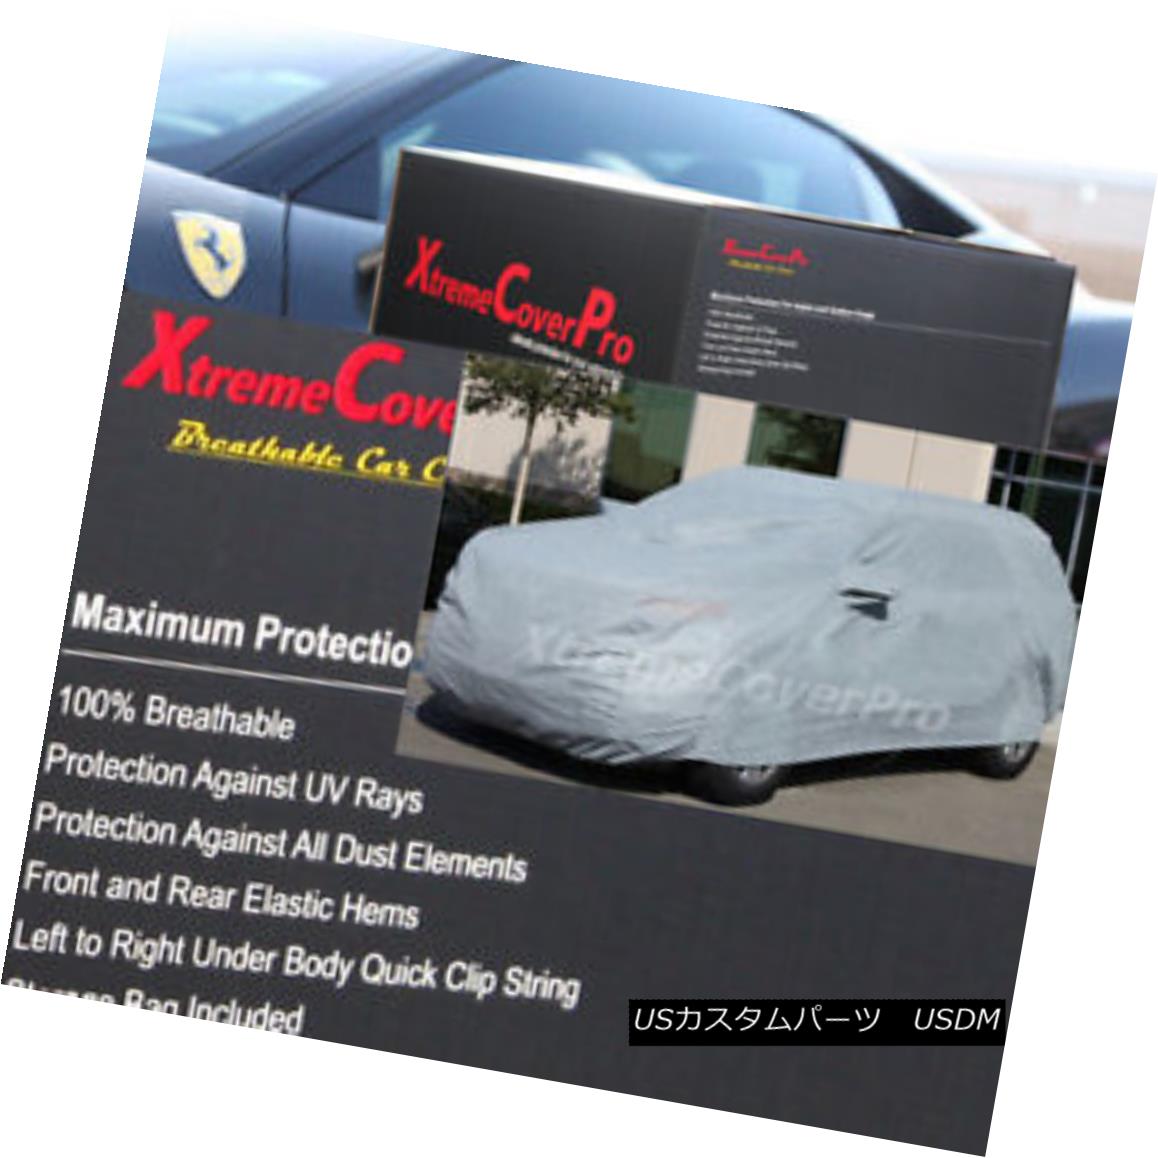 激安な メーカー公式ショップ 2015 JEEP CHEROKEE Breathable Car Cover w Mirror Pockets - Gray カーカバー CHEROKEE通気性のある車カバー付き ミラーポケット グレー raion.shadrinsk.net raion.shadrinsk.net